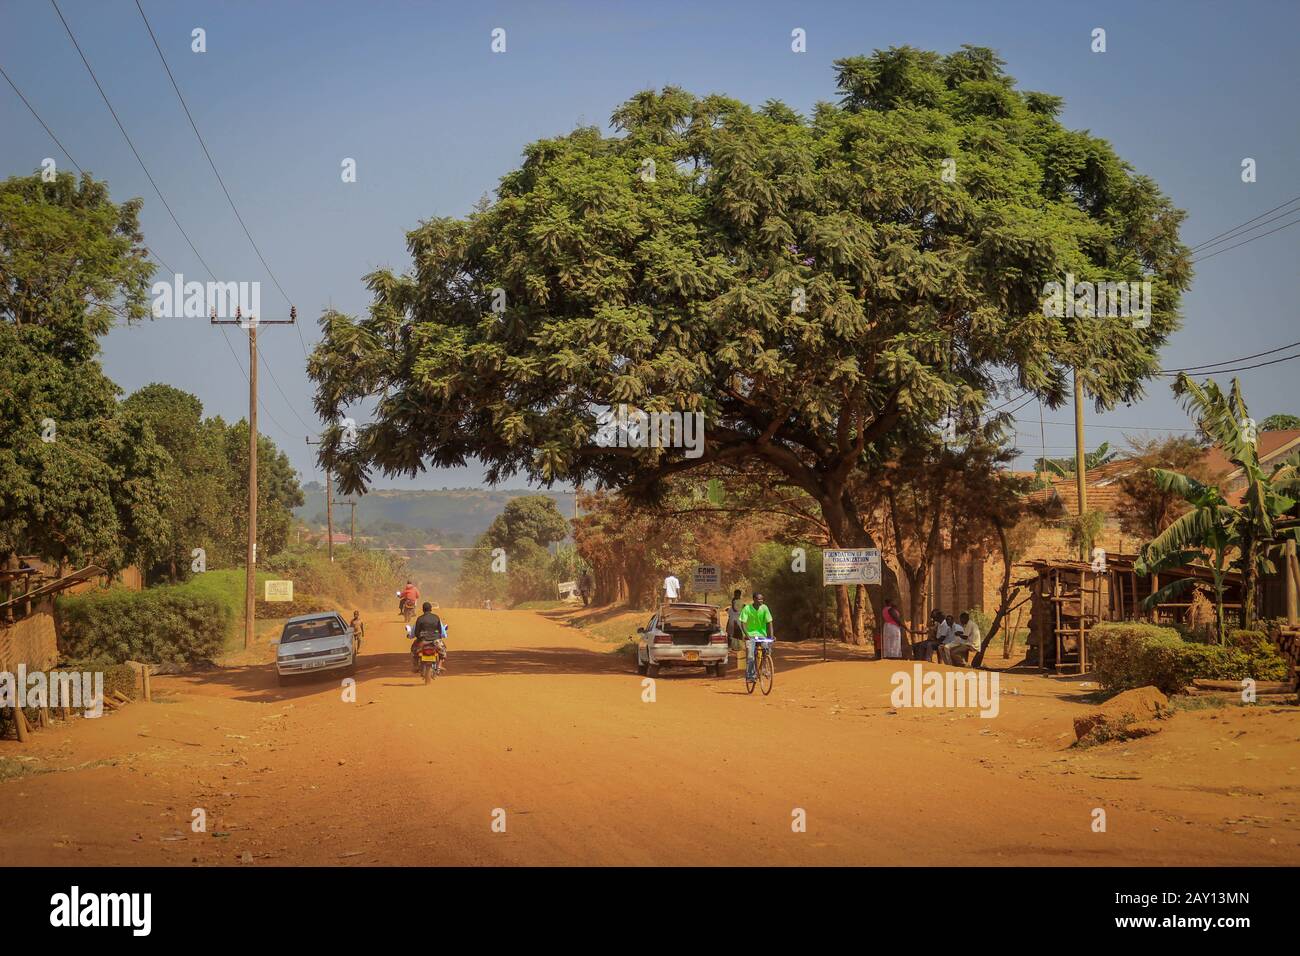 Mbale, Uganda - 2 febbraio 2016: La vita quotidiana sulla strada della città di confine ugandese di Mbale vicino al confine con il Kenya. Vita africana. Foto Stock